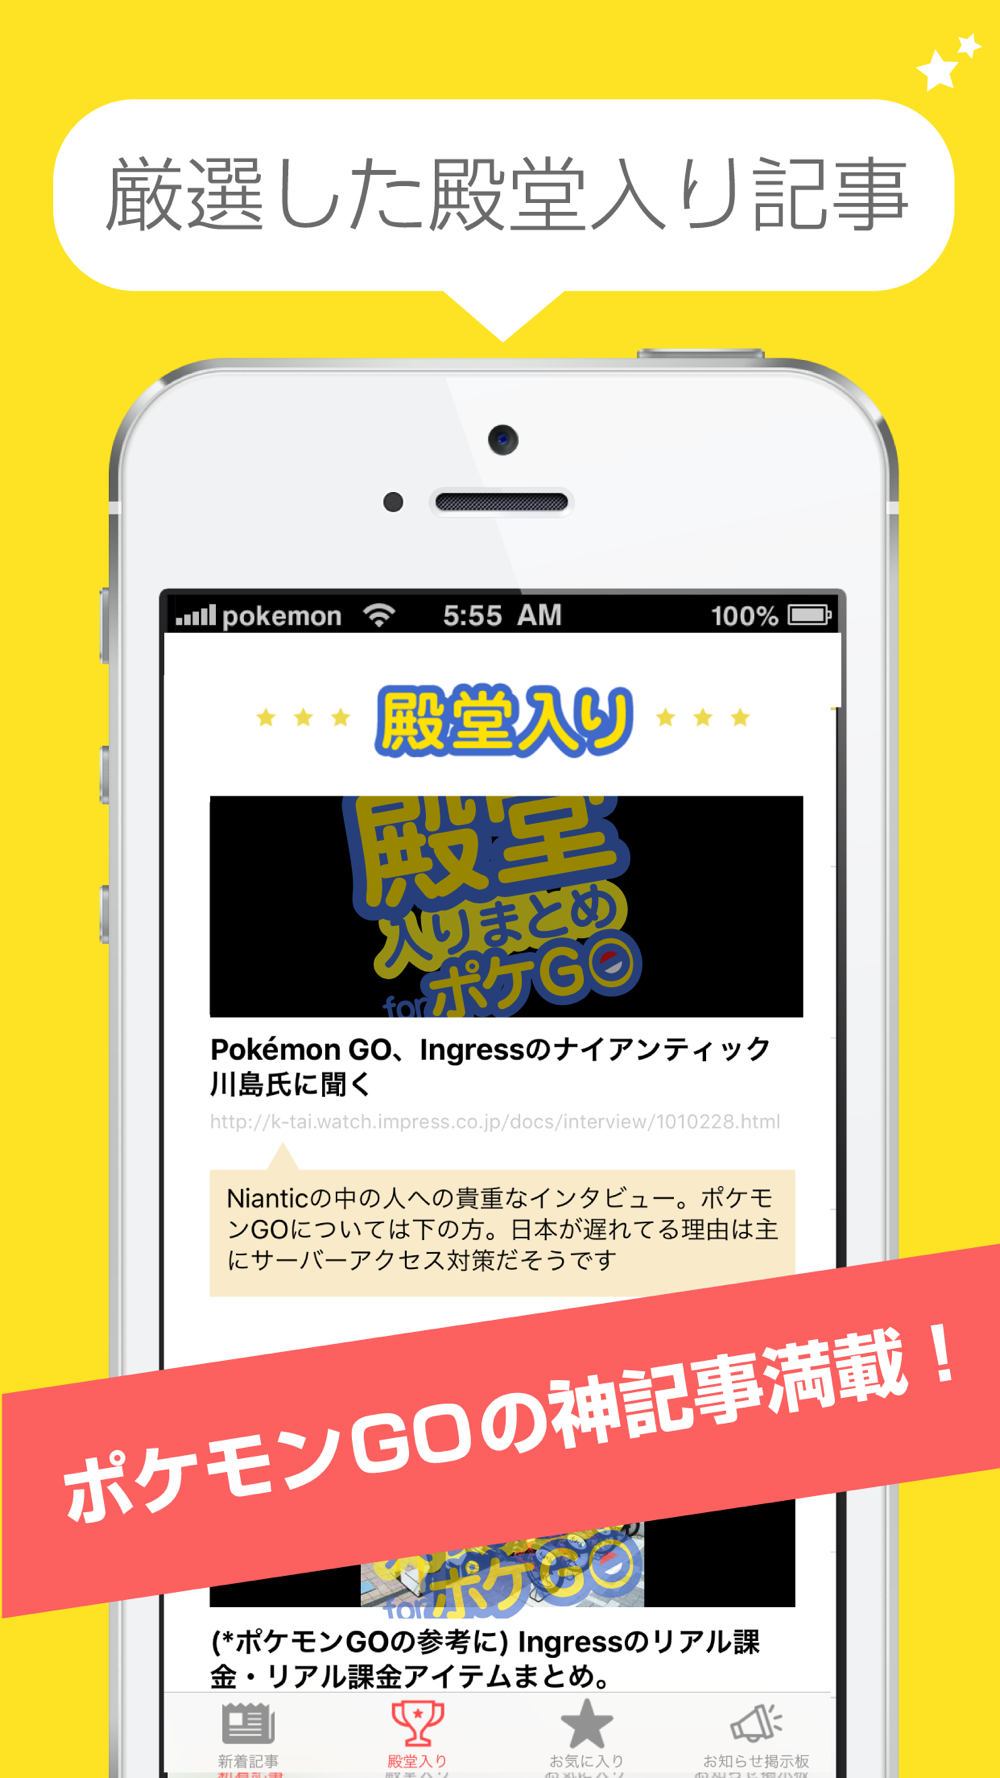 殿堂入り攻略まとめ For ポケモンgo Pokemon Go Free Download App For Iphone Steprimo Com